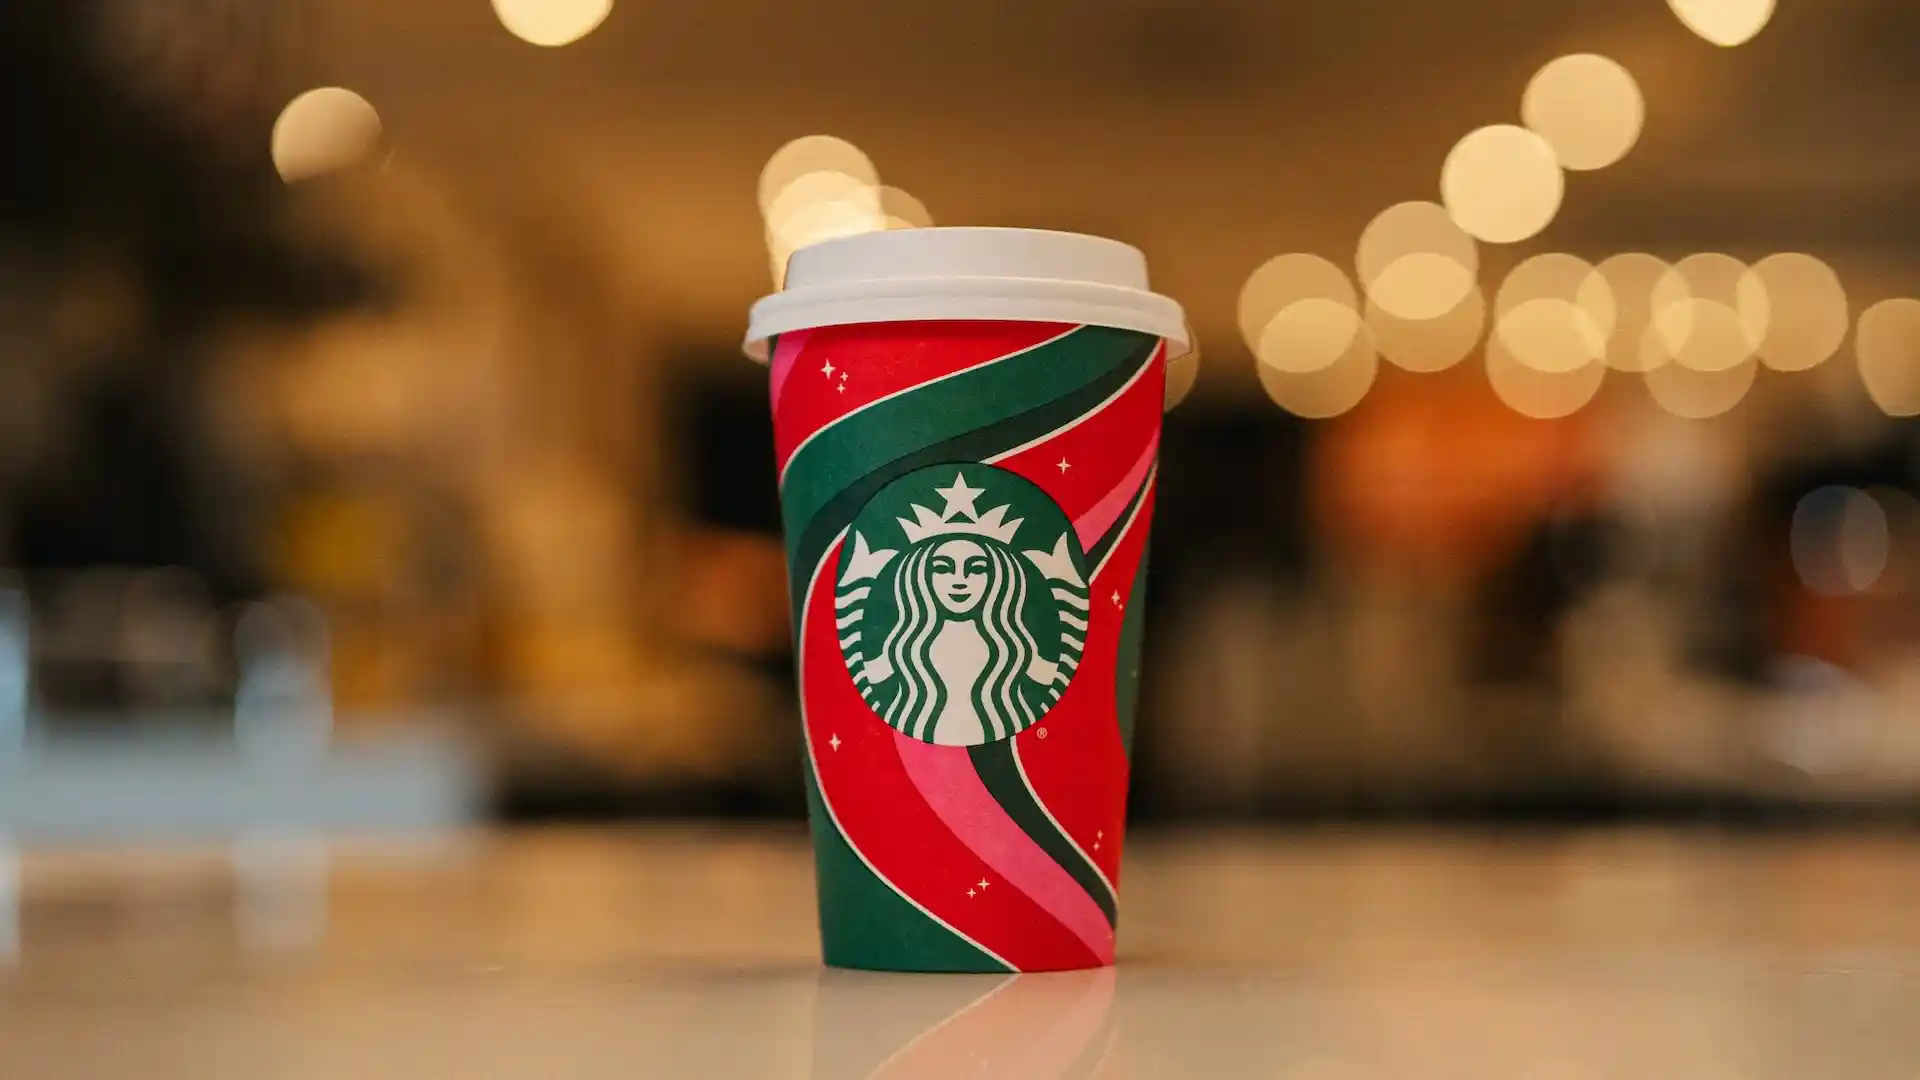 Vasos navideños de Starbucks gratis: conoce cómo obtenerlo